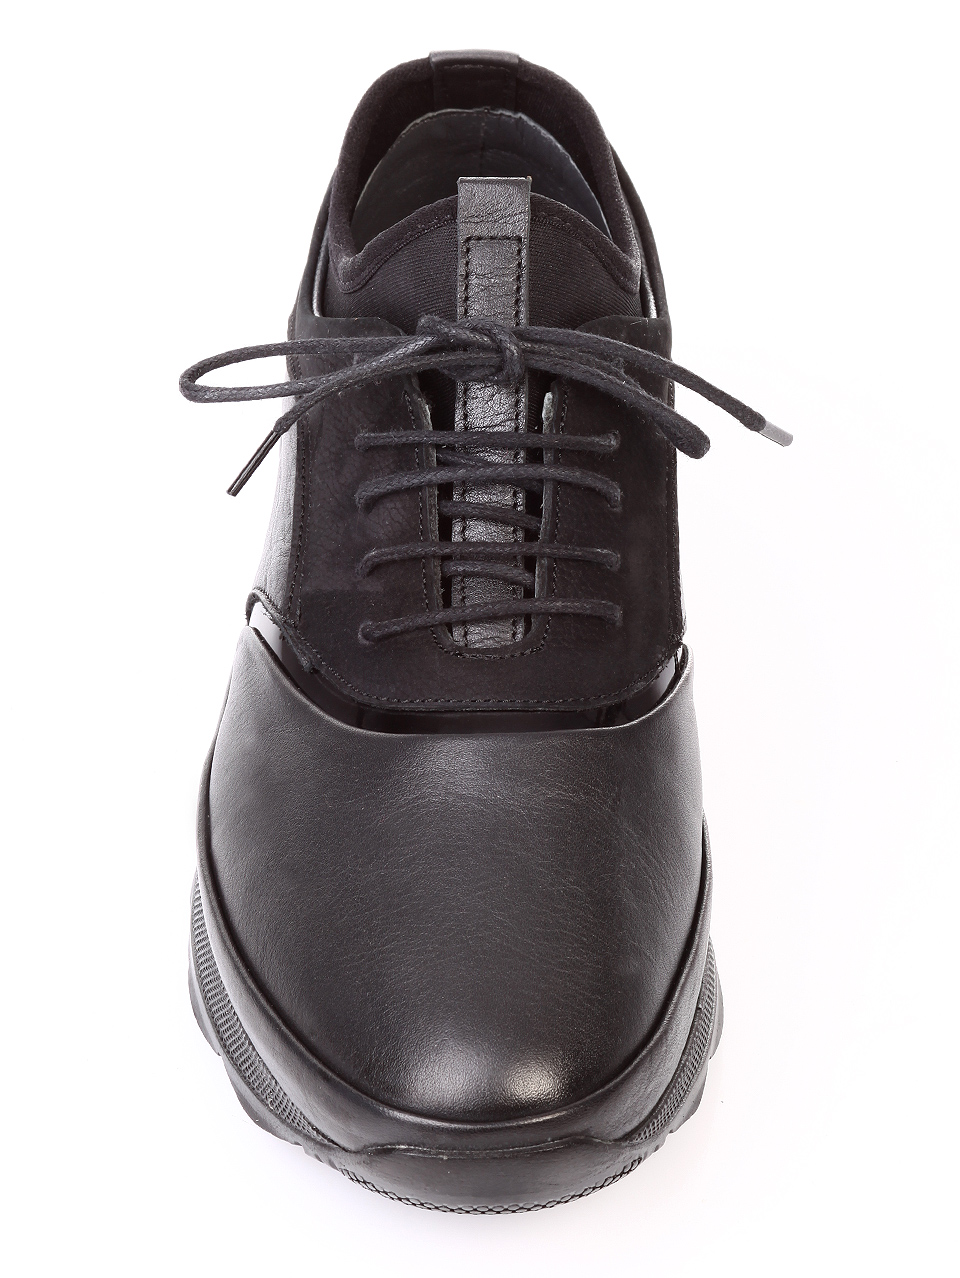 Ежедневни мъжки обувки от естествена кожа 7AT-181108 black